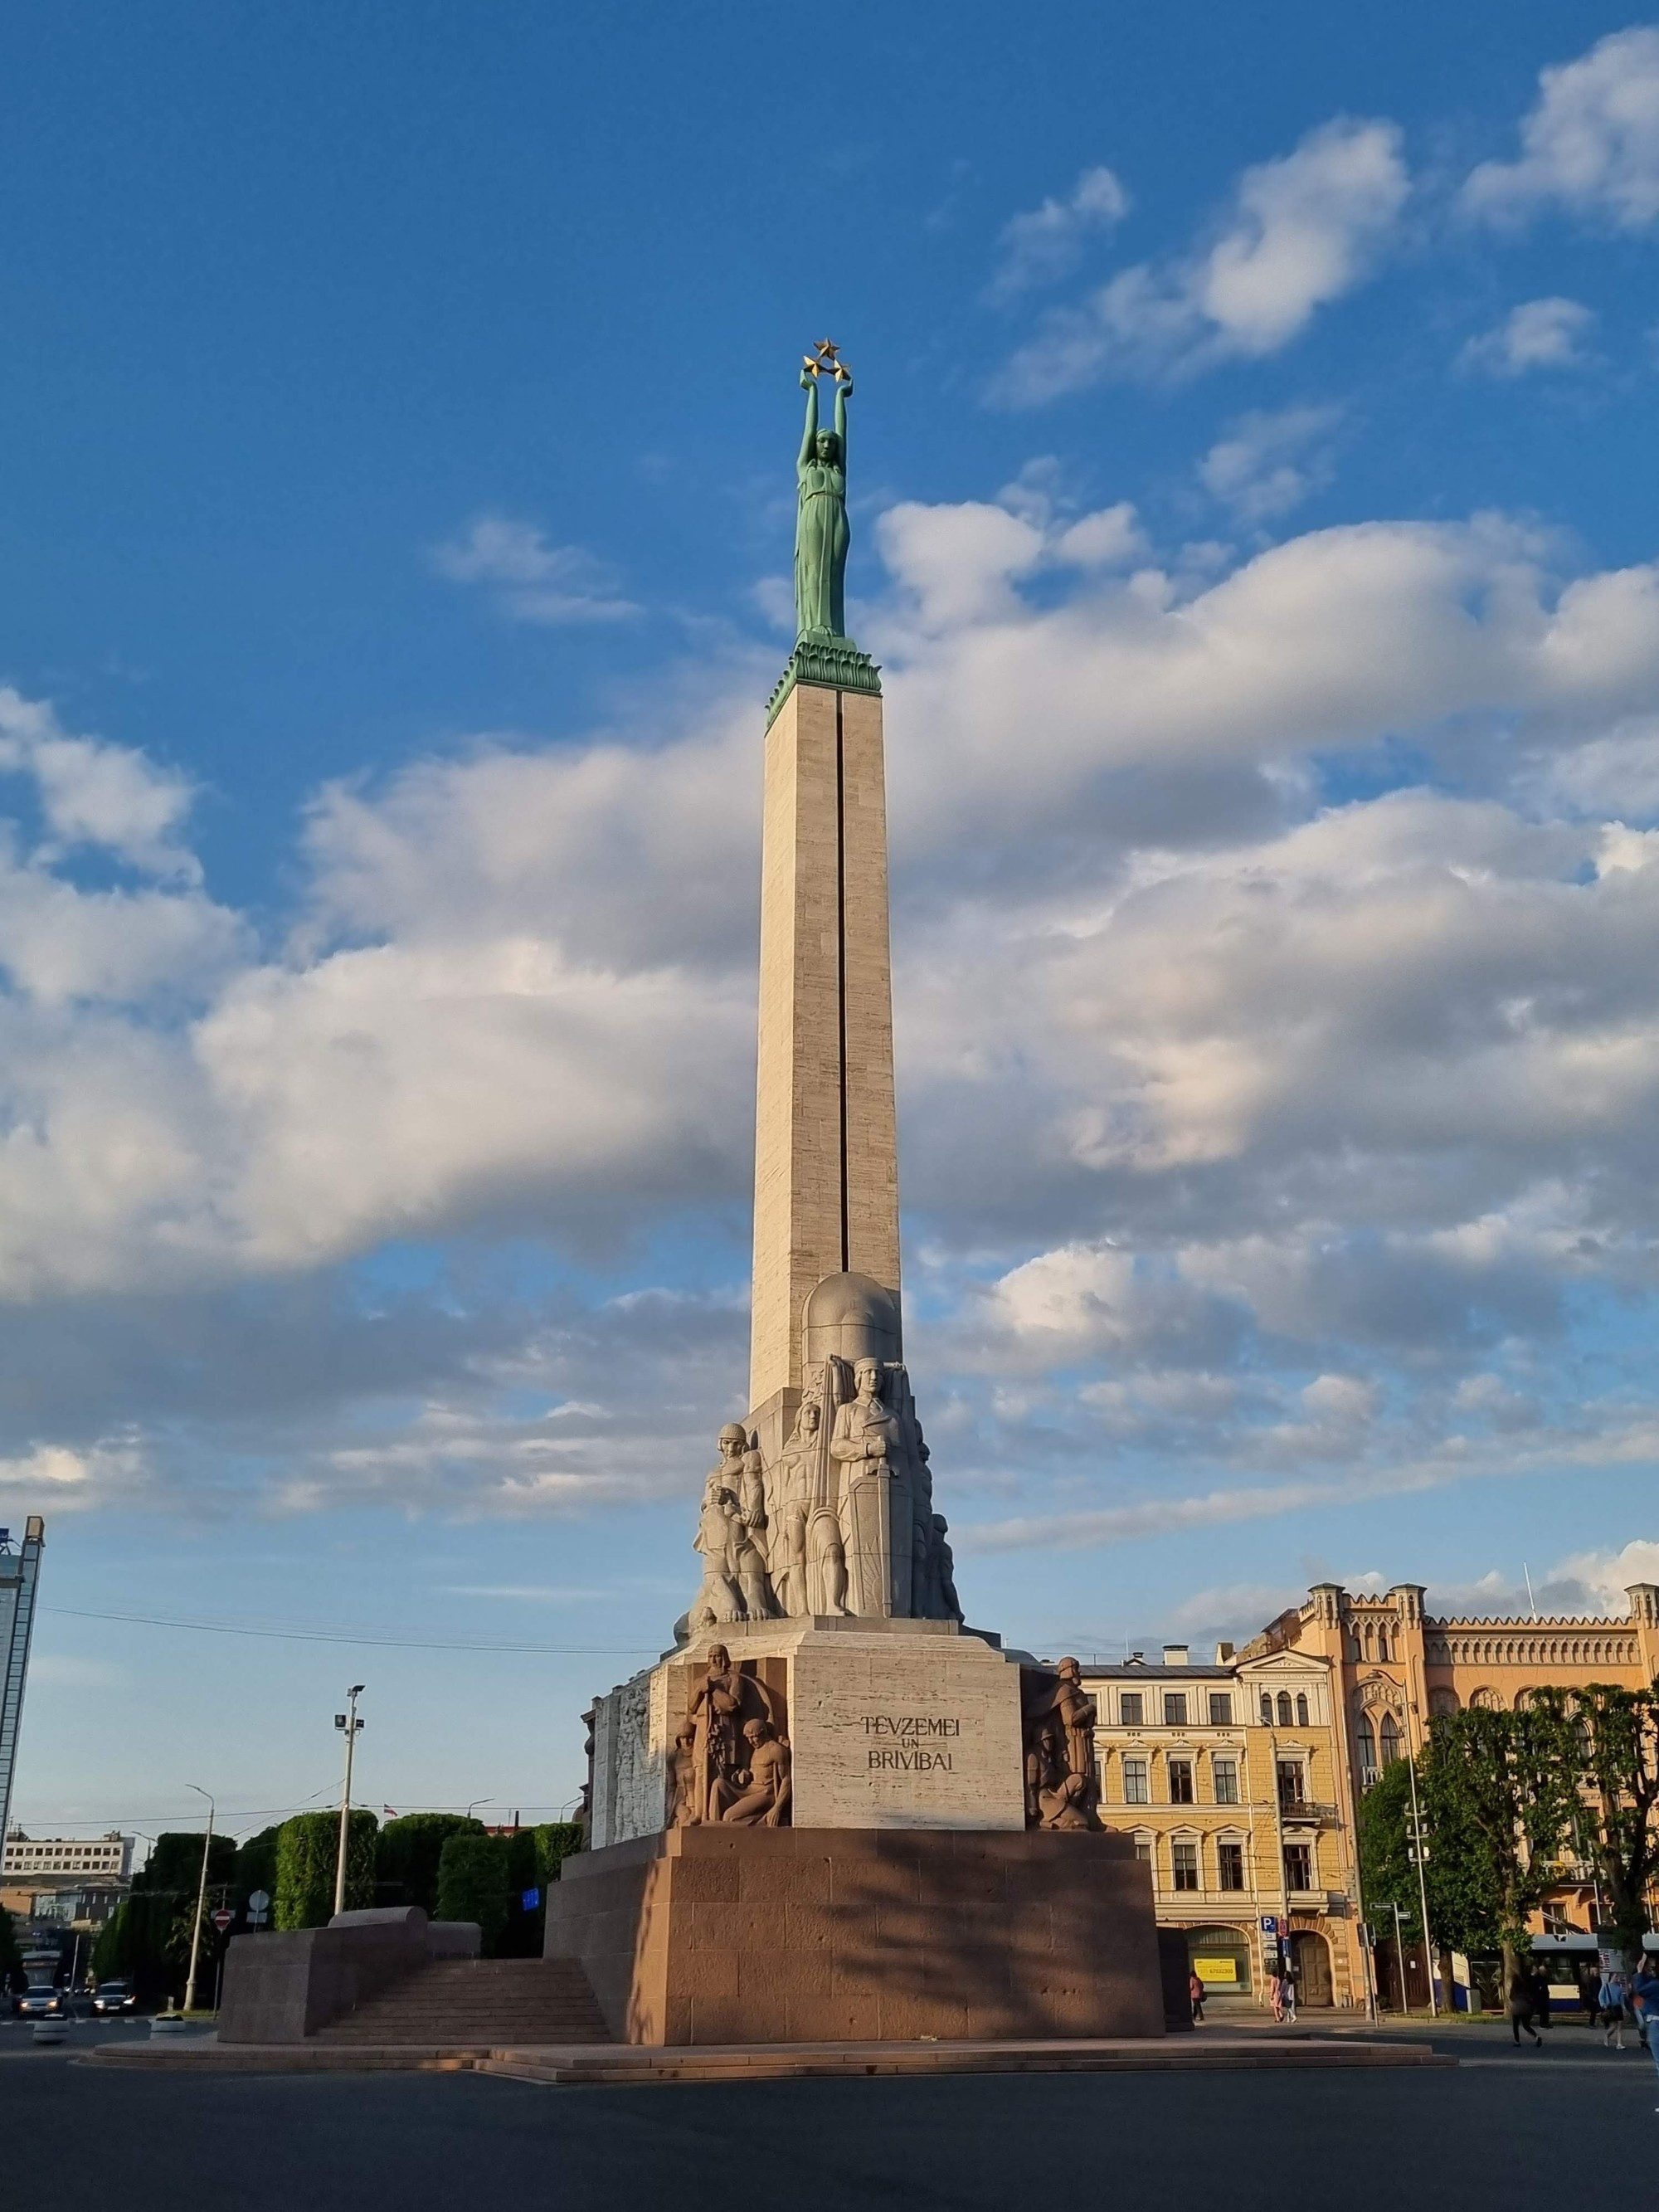 Brīvības piemineklis, Латвия